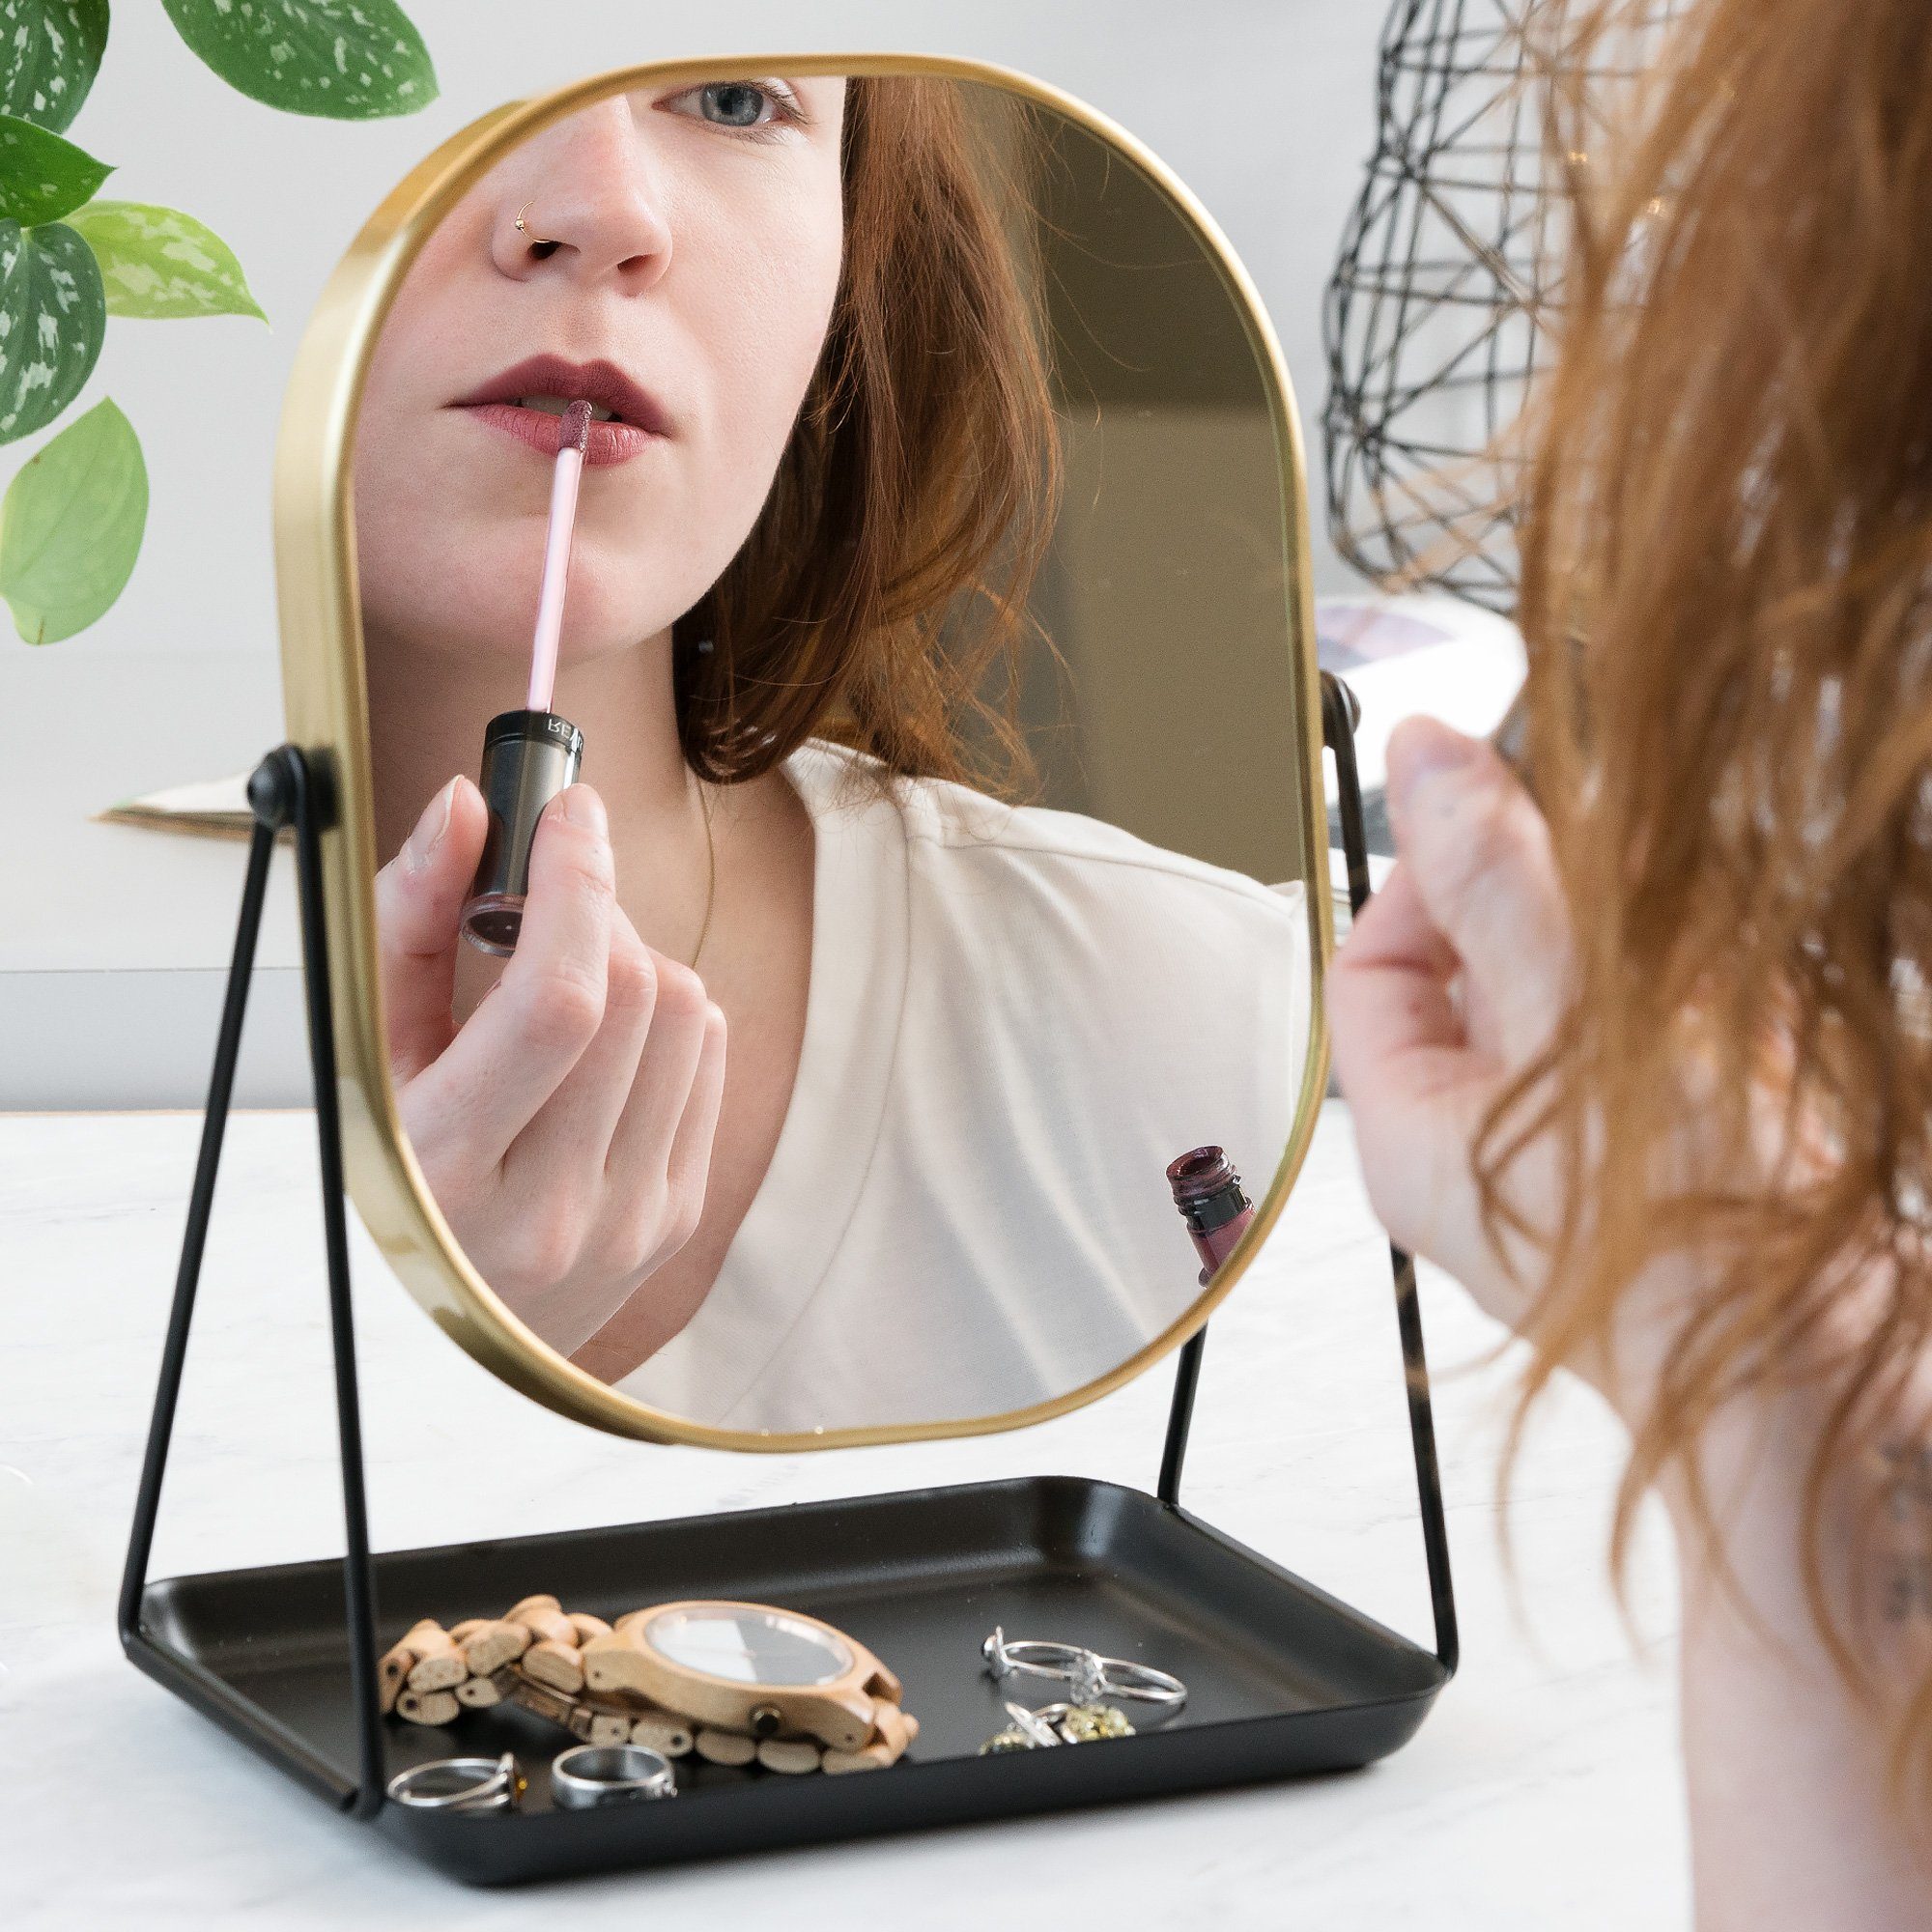 Kosmetikspiegel Tischspiegel zum Schmuckaufbewahrung Schminken/Frisieren mit Navaris